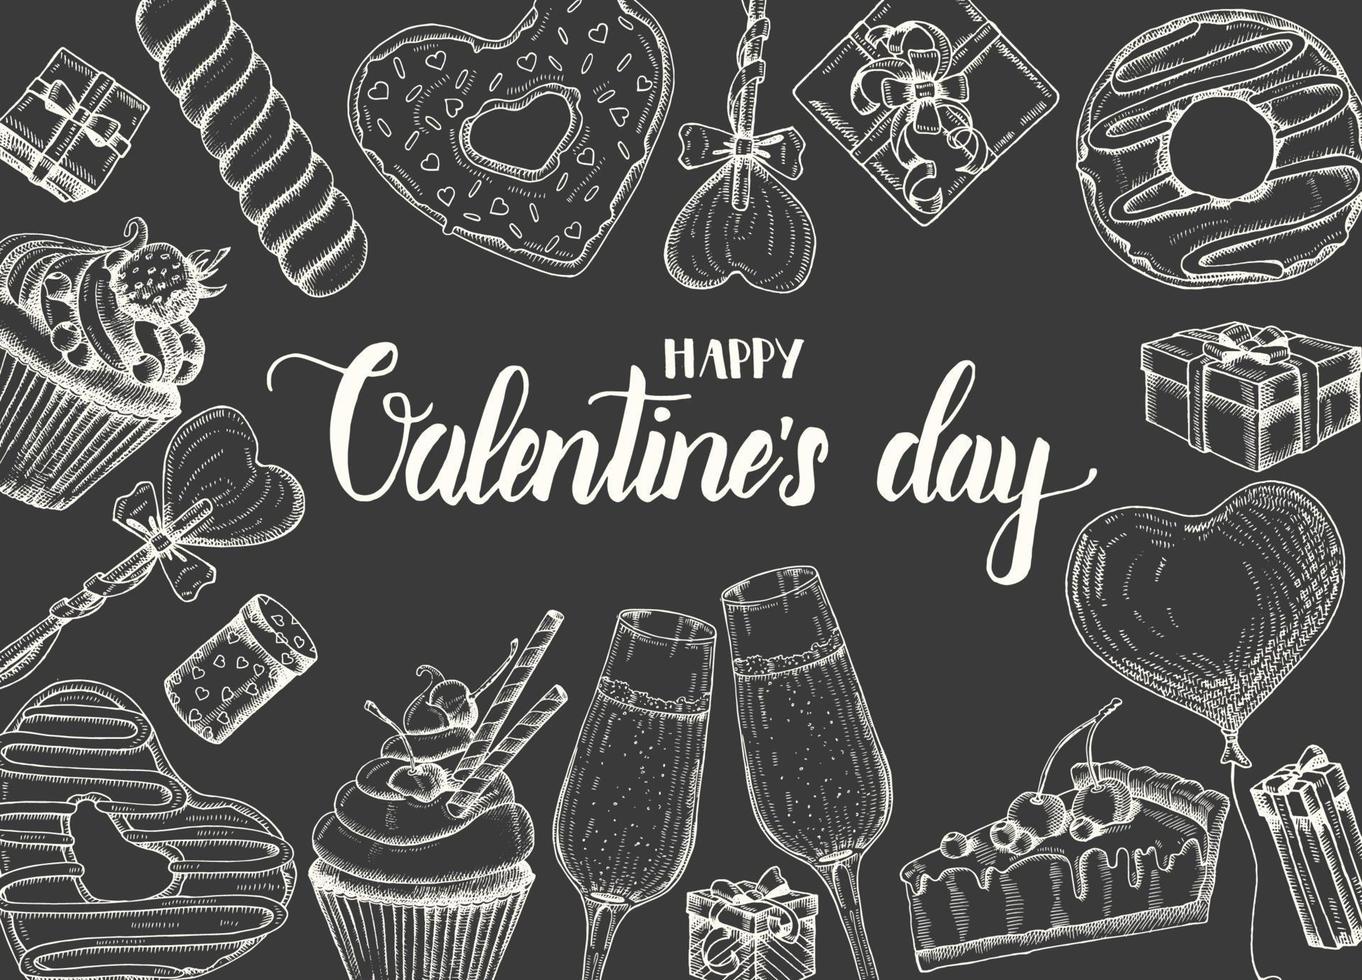 Valentijnsdag achtergrond met doodle handgetekende objecten in schets stijl-lolly, geglazuurde donut, glas champagne, geschenkdozen, taart en cupcake. happy Valentijnsdag - belettering kalligrafie zin vector